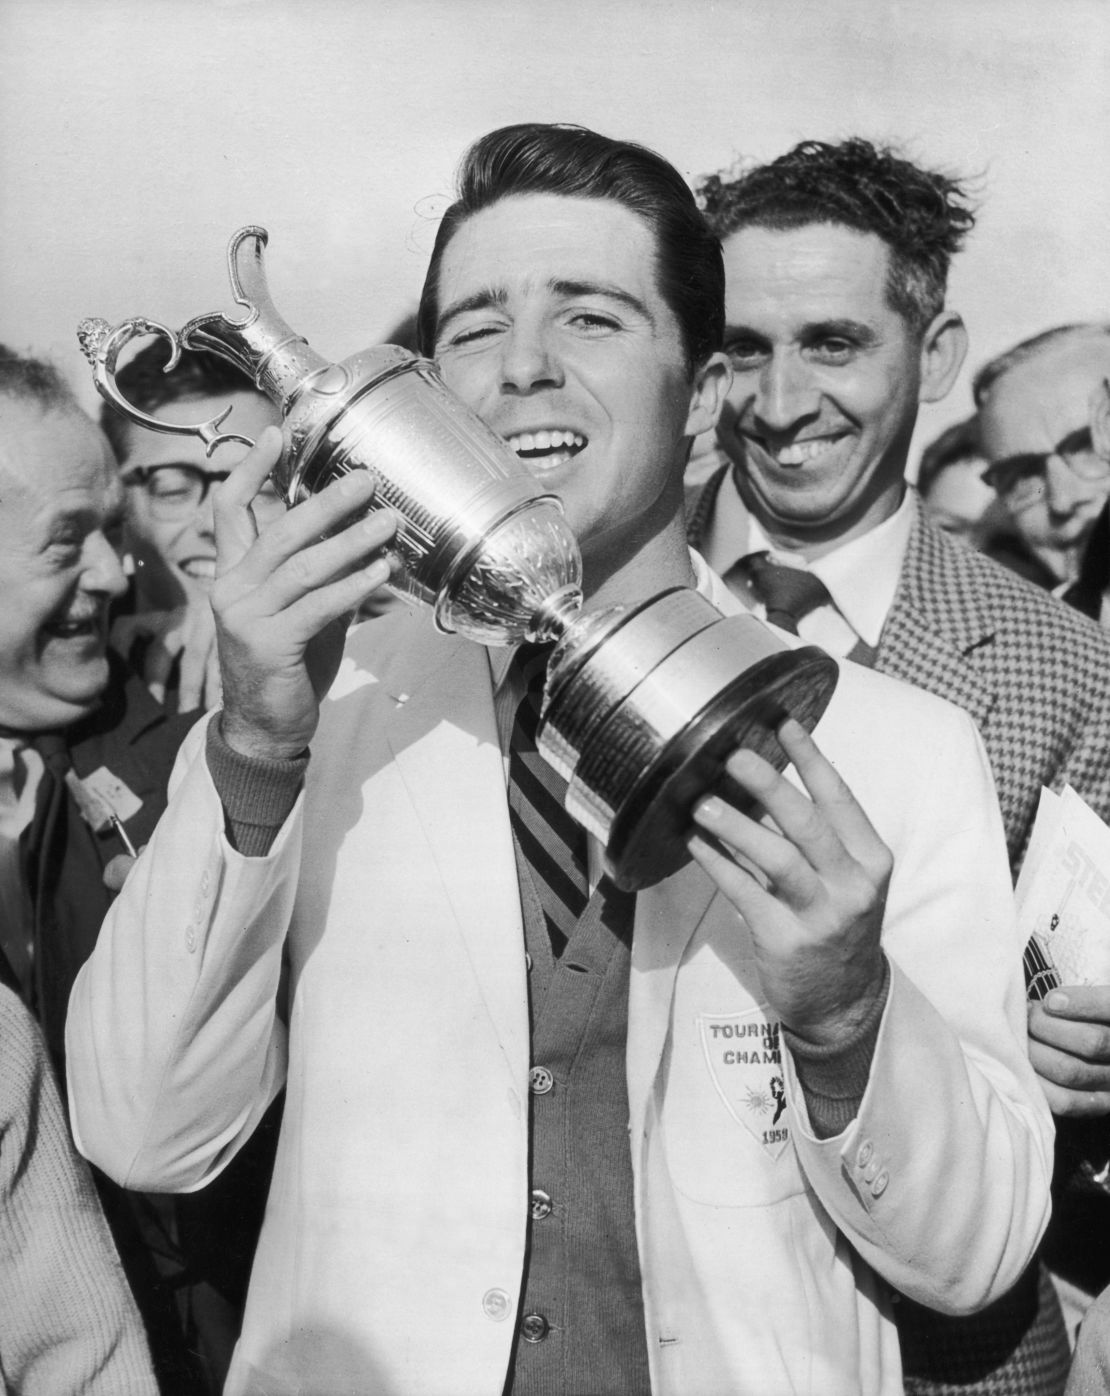 Player won the British Open at Muirifeld, Scotland in 1959.